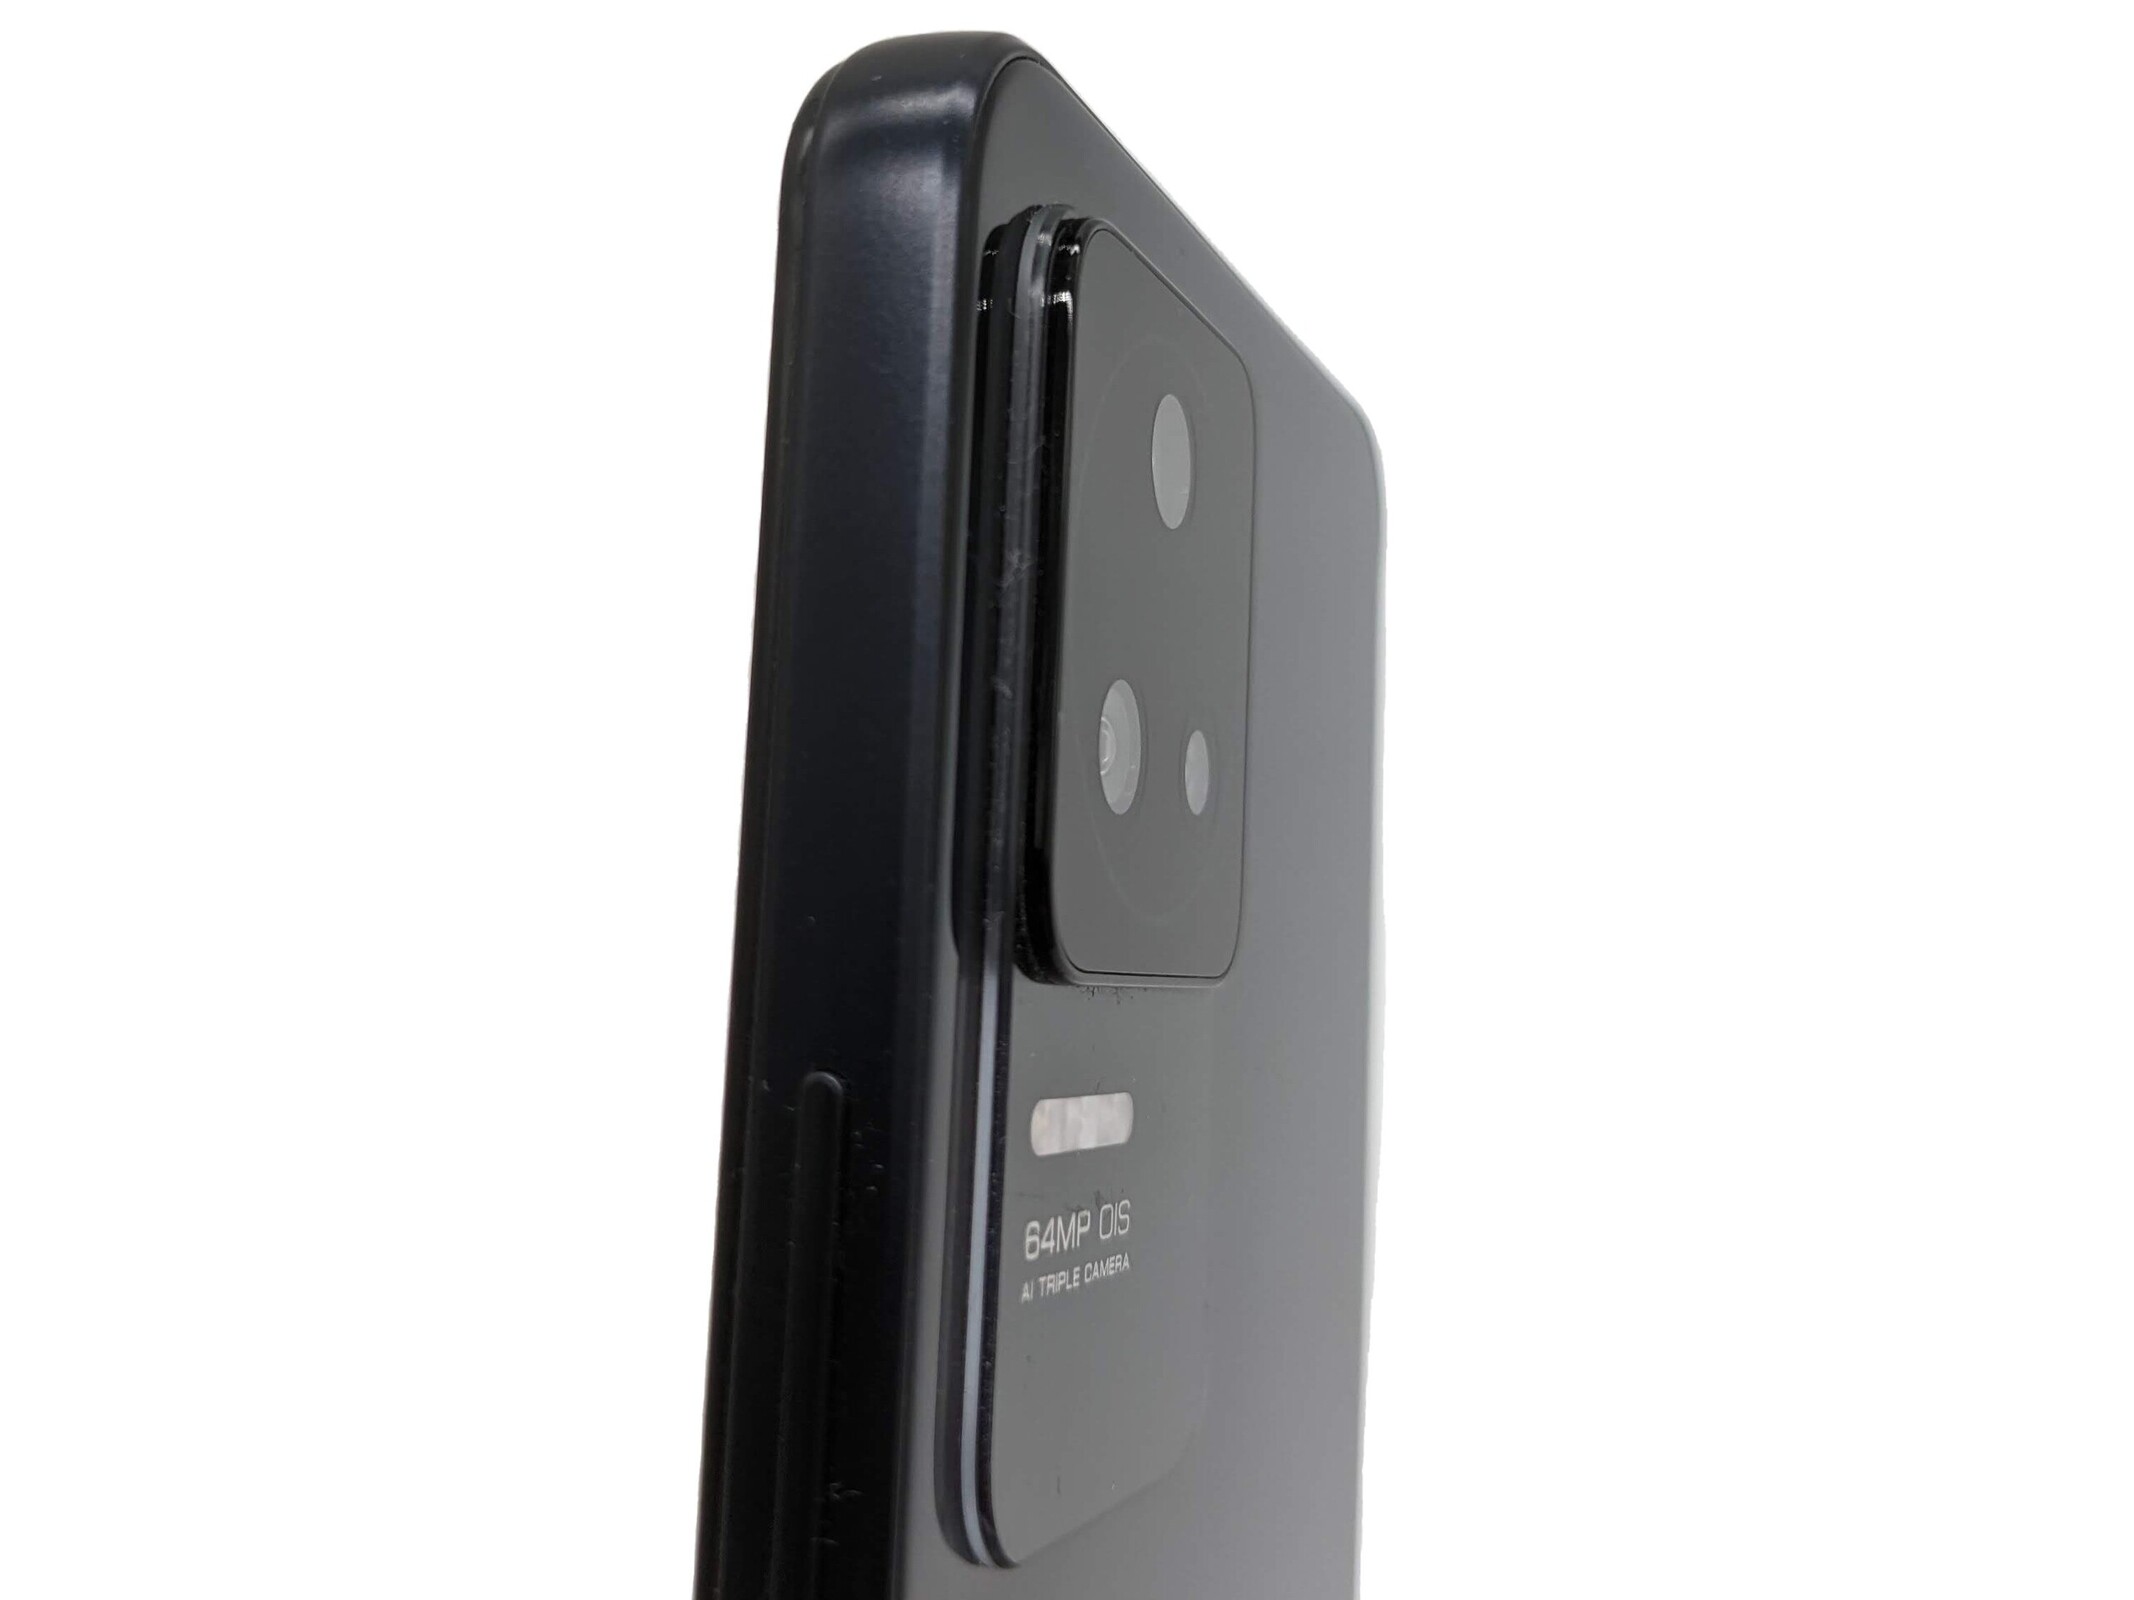 XiaoMi Pocophone F5, Pocophone F5 Pro CN SPEC